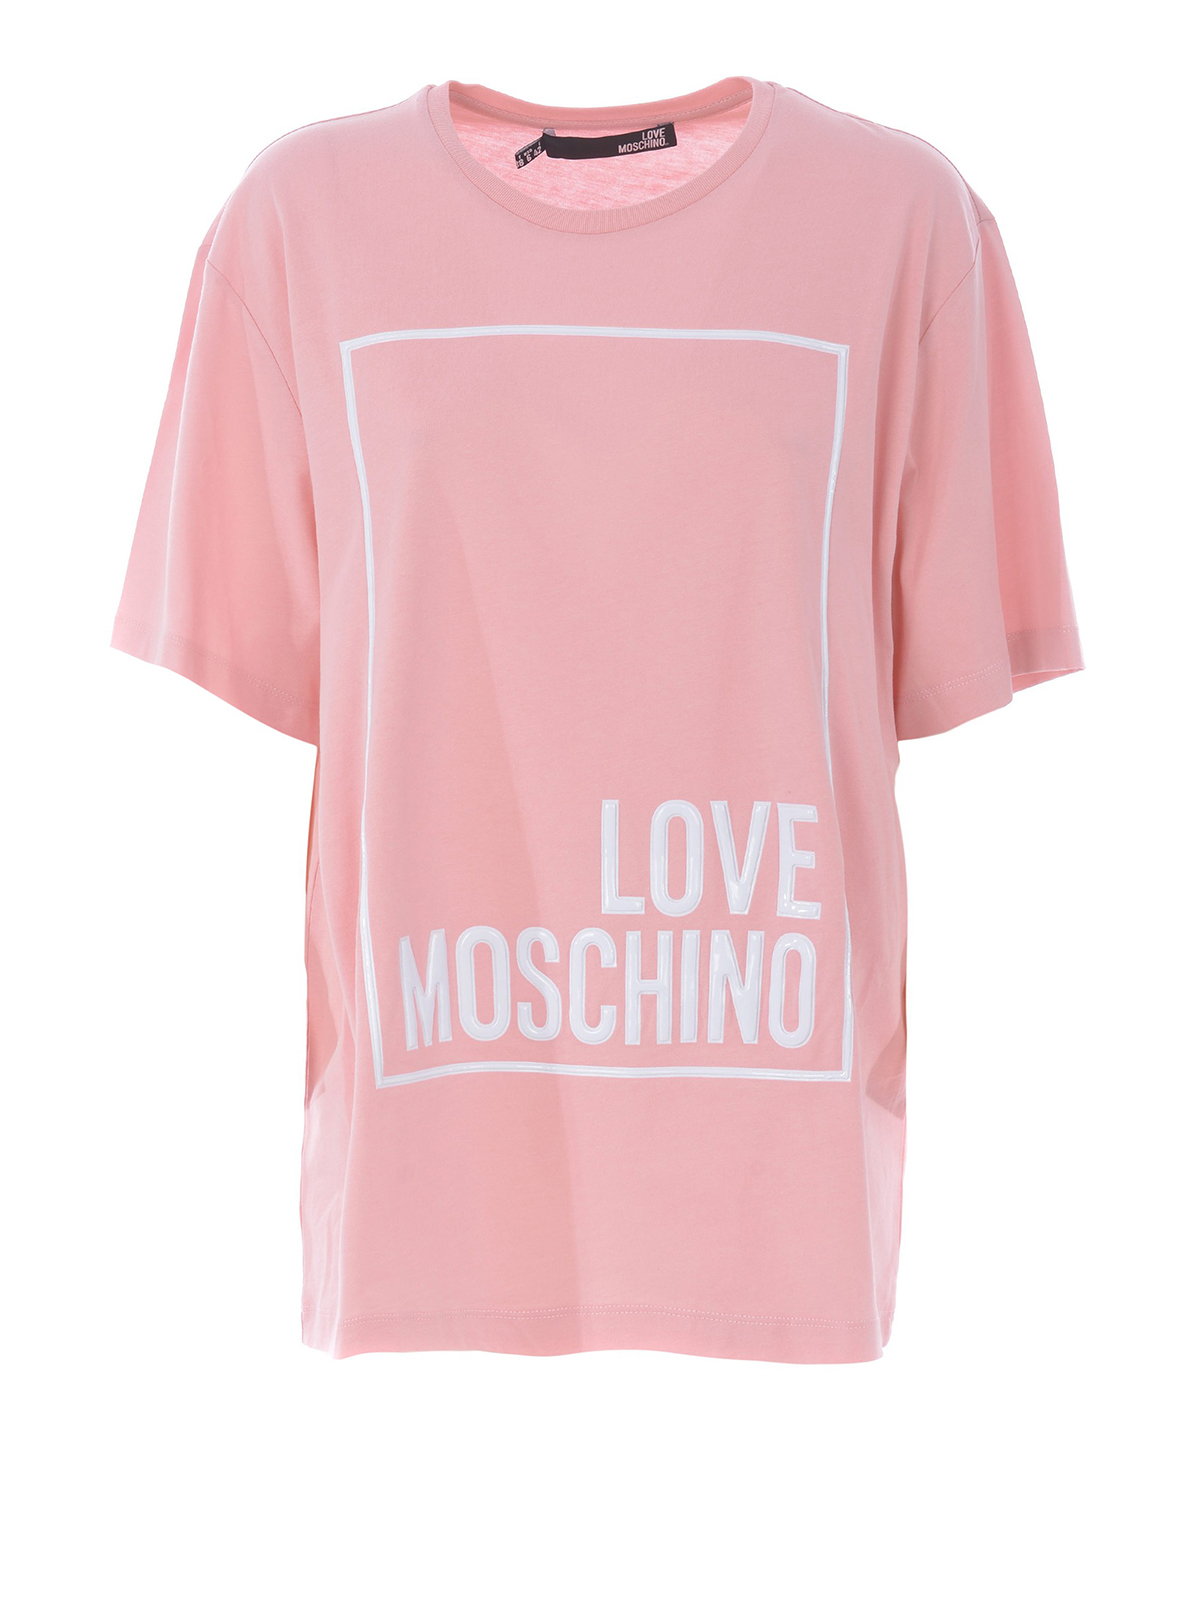 love moschino shirts